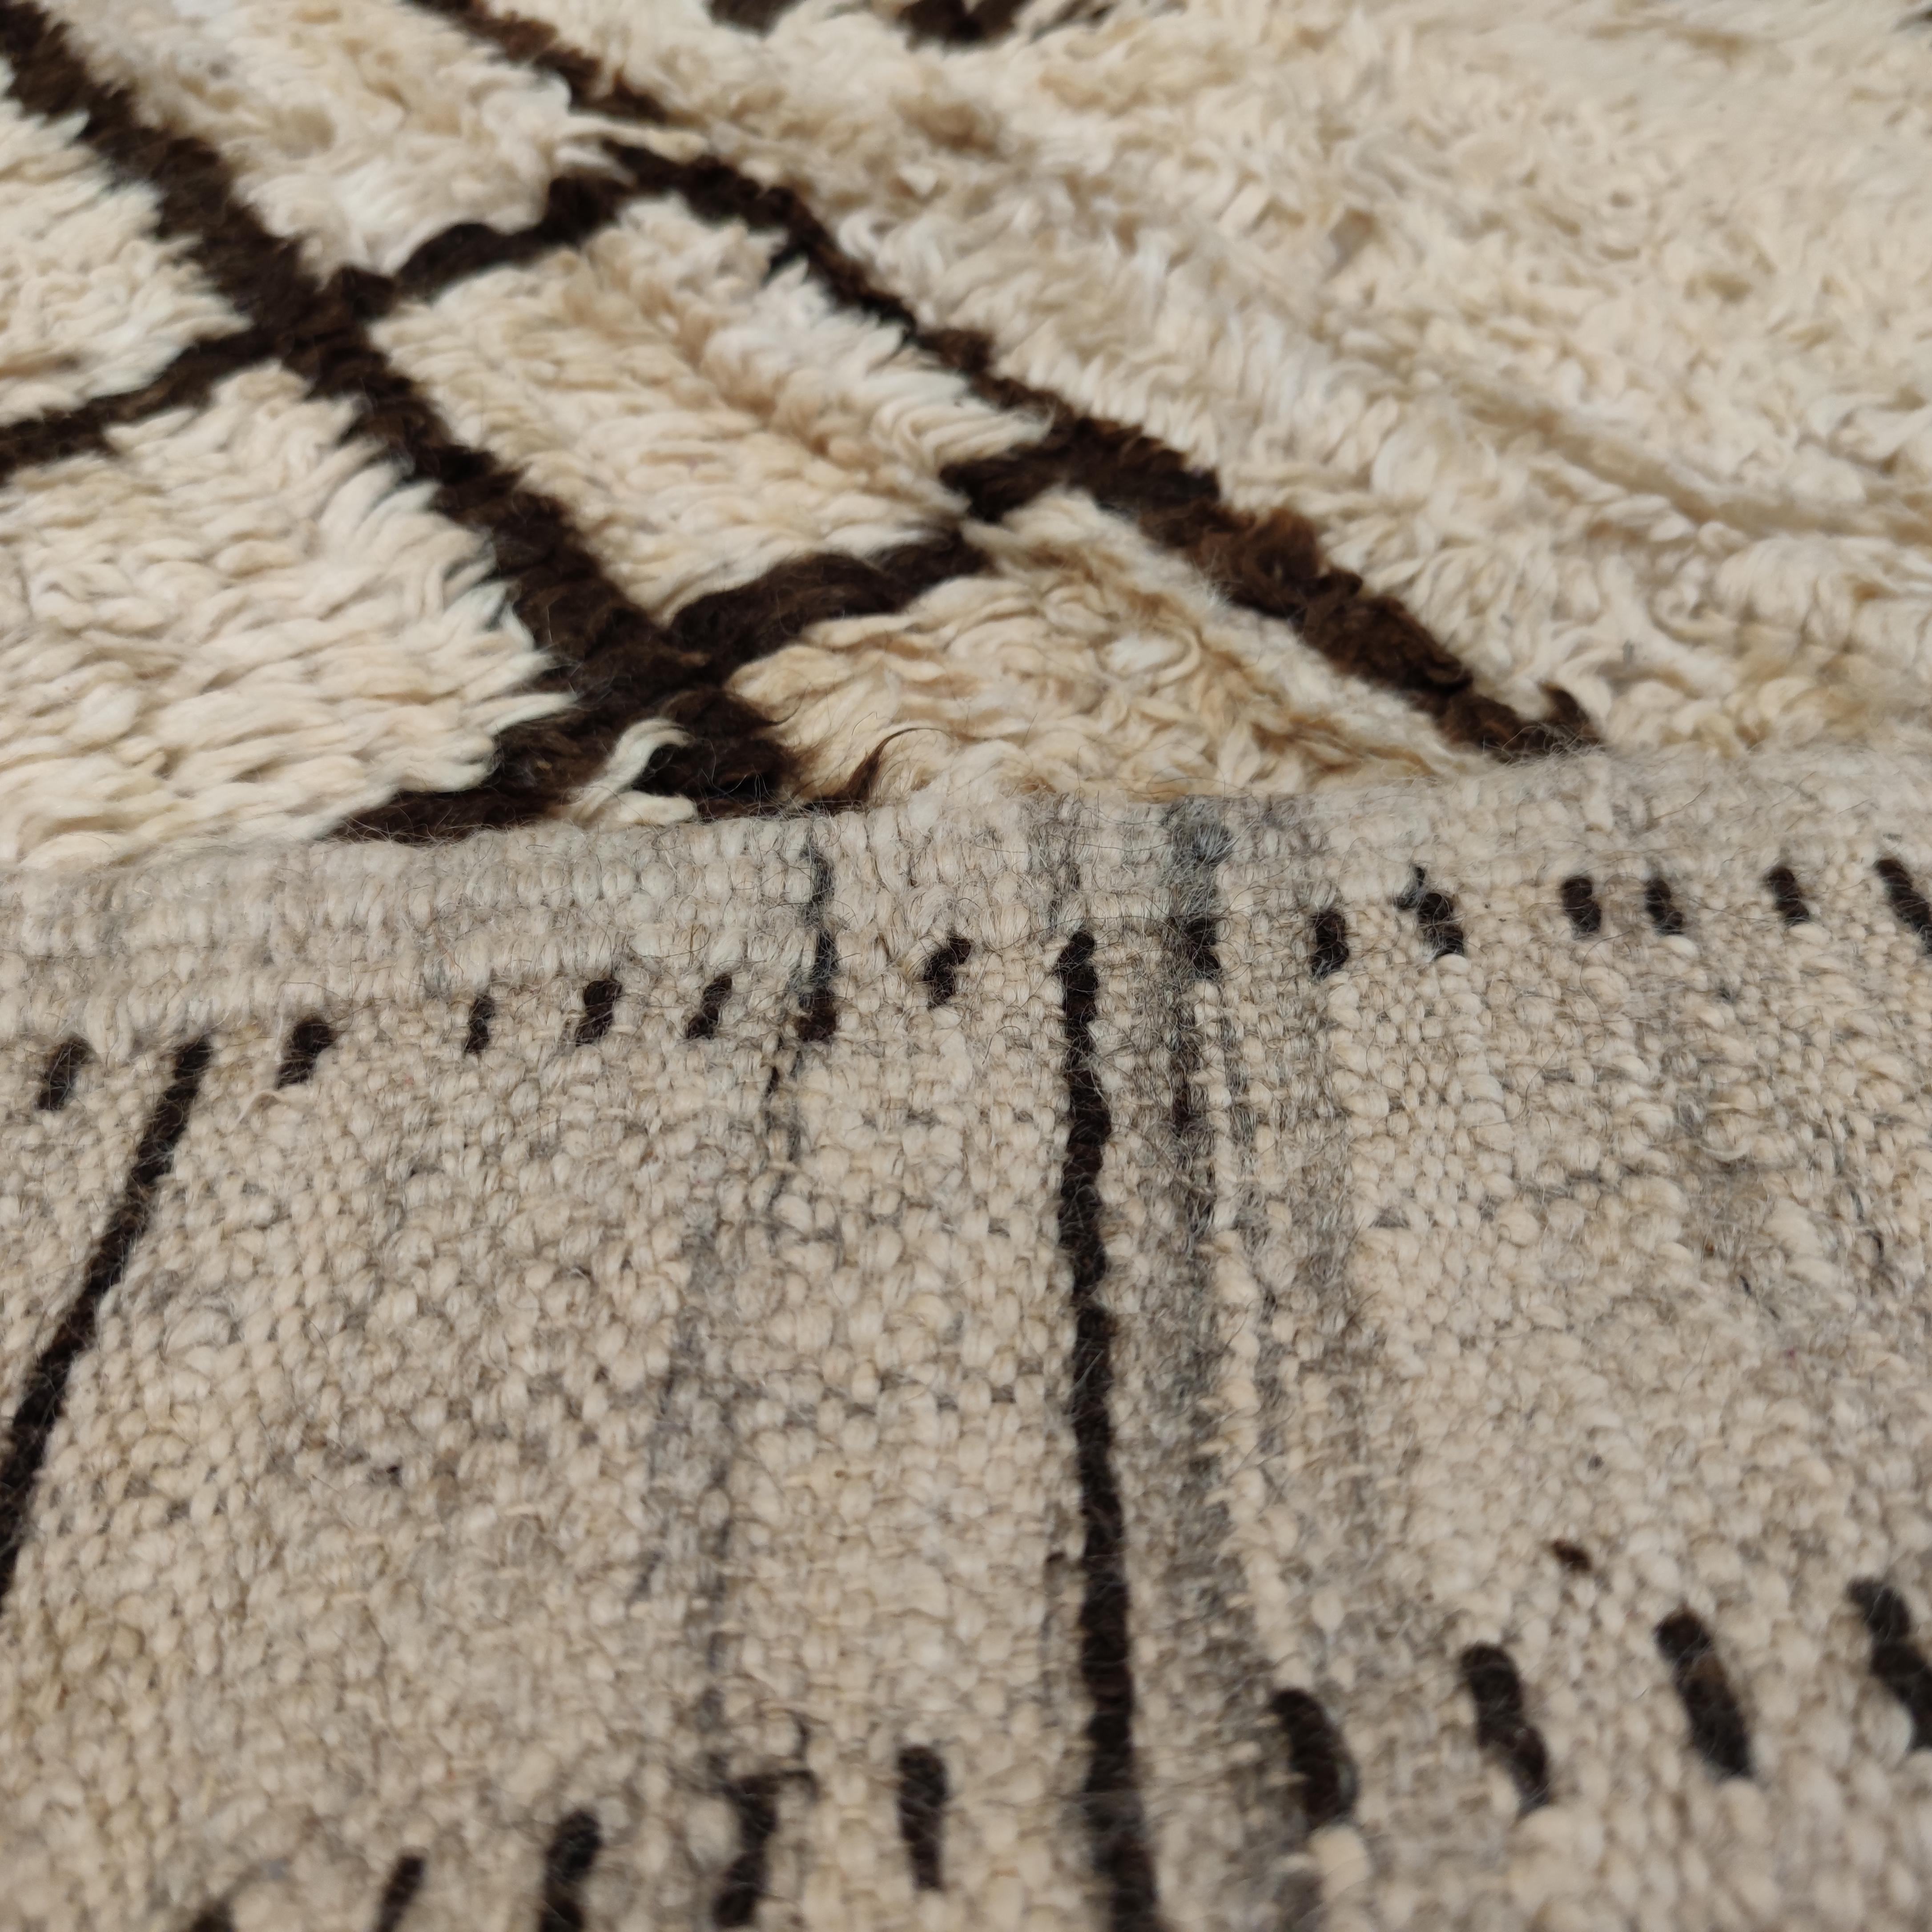 Die Teppiche aus der Region Azilal im zentralen Hohen Atlas Marokkos sind eine relativ neue Entdeckung. Sie unterscheiden sich von den weißgrundigen Teppichen des Mittleren Atlas der Beni Ouarain und der Beni Mguild vor allem durch ihre schlaffe